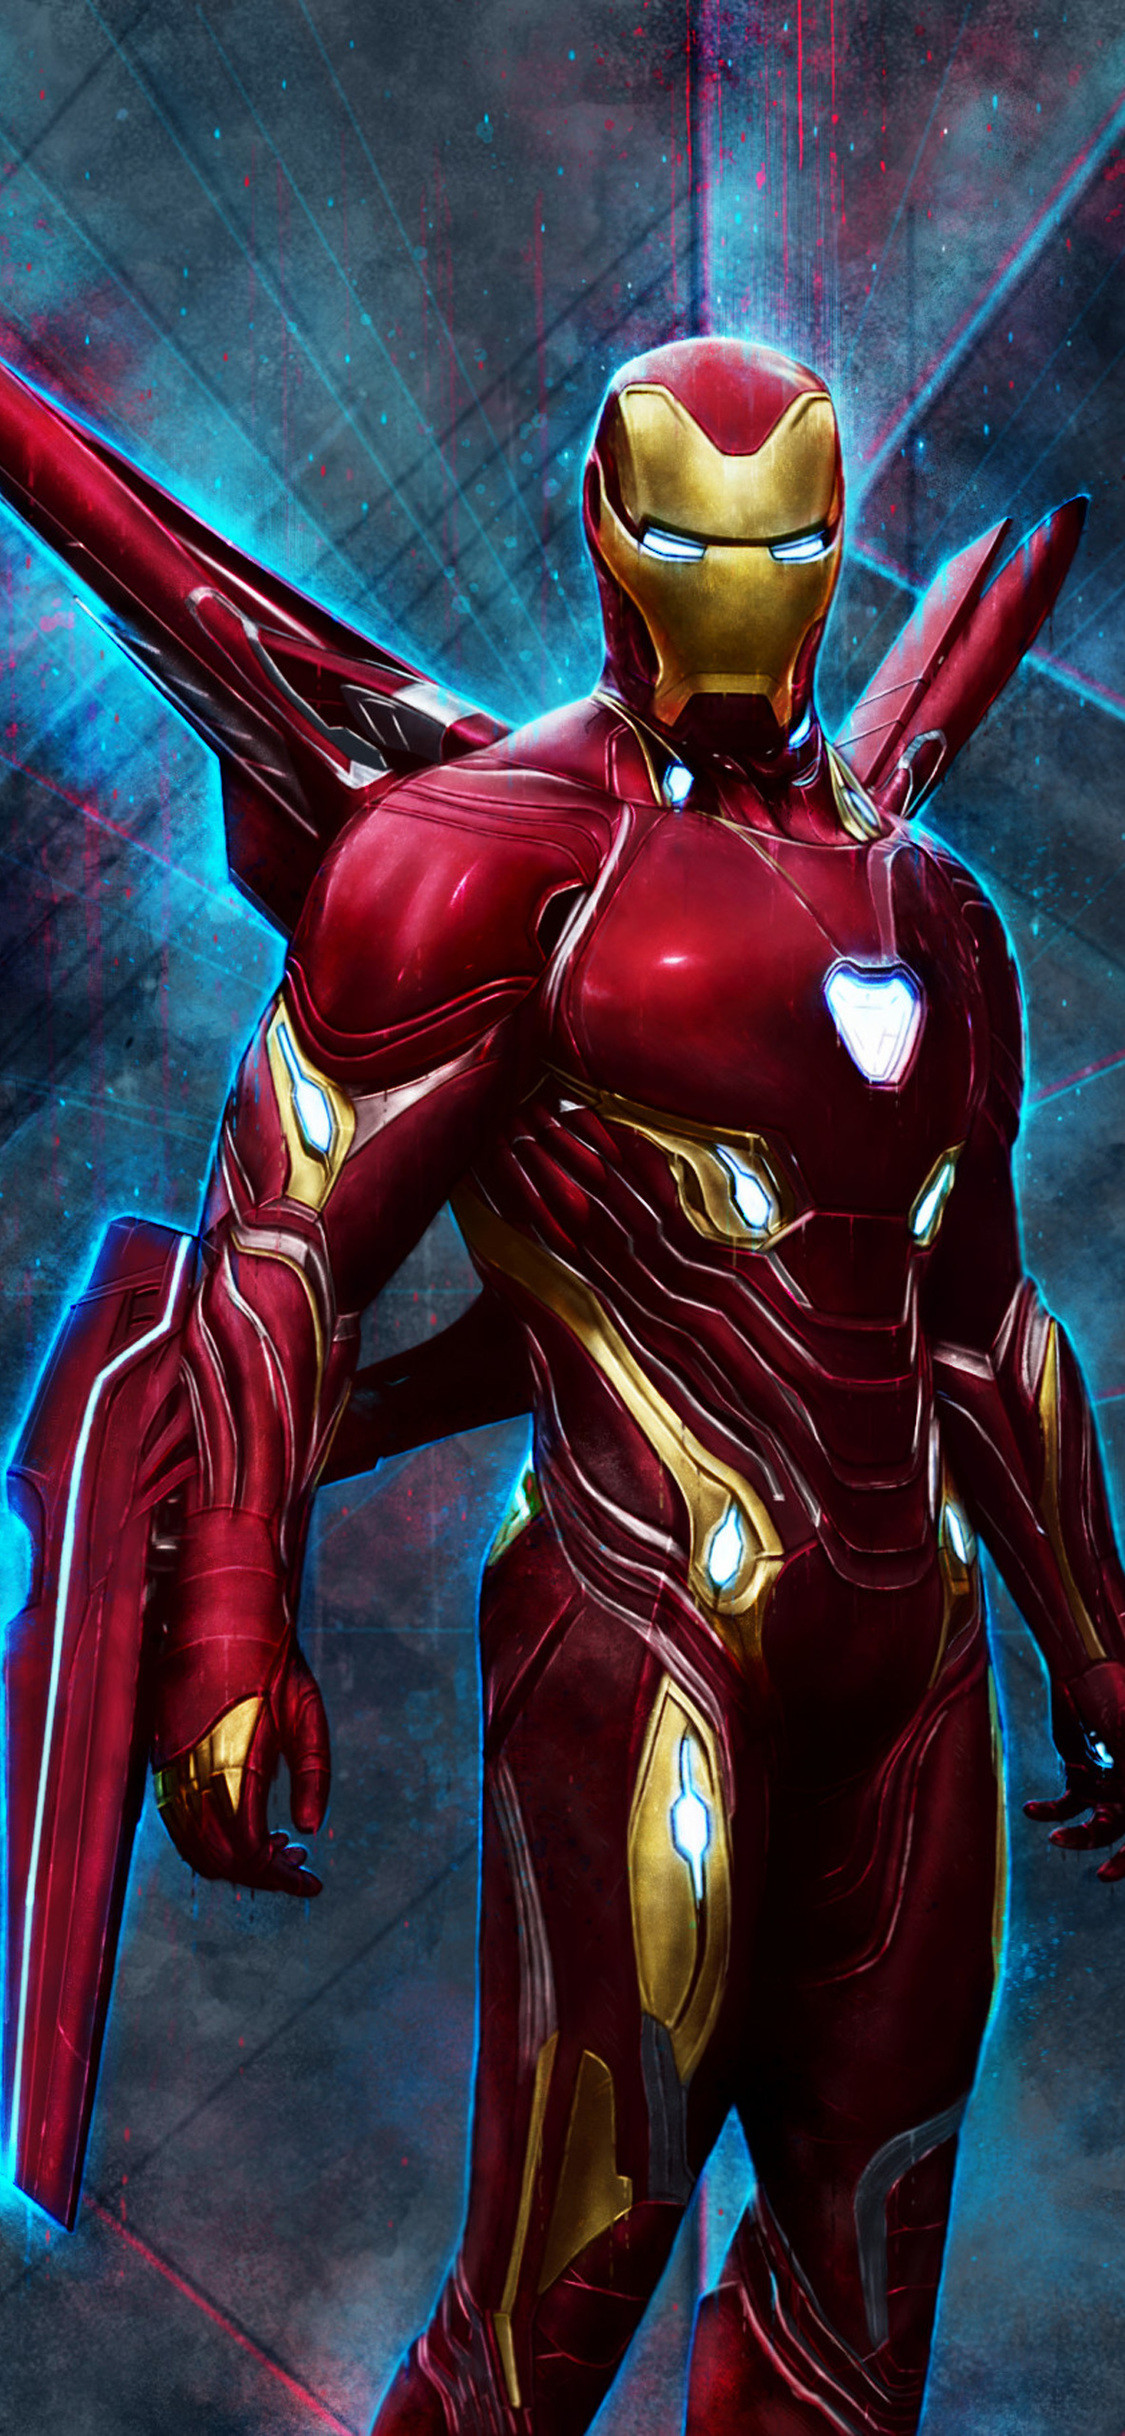 iron man foto sfondo,eroe,personaggio fittizio,supereroe,cg artwork,uomo di ferro